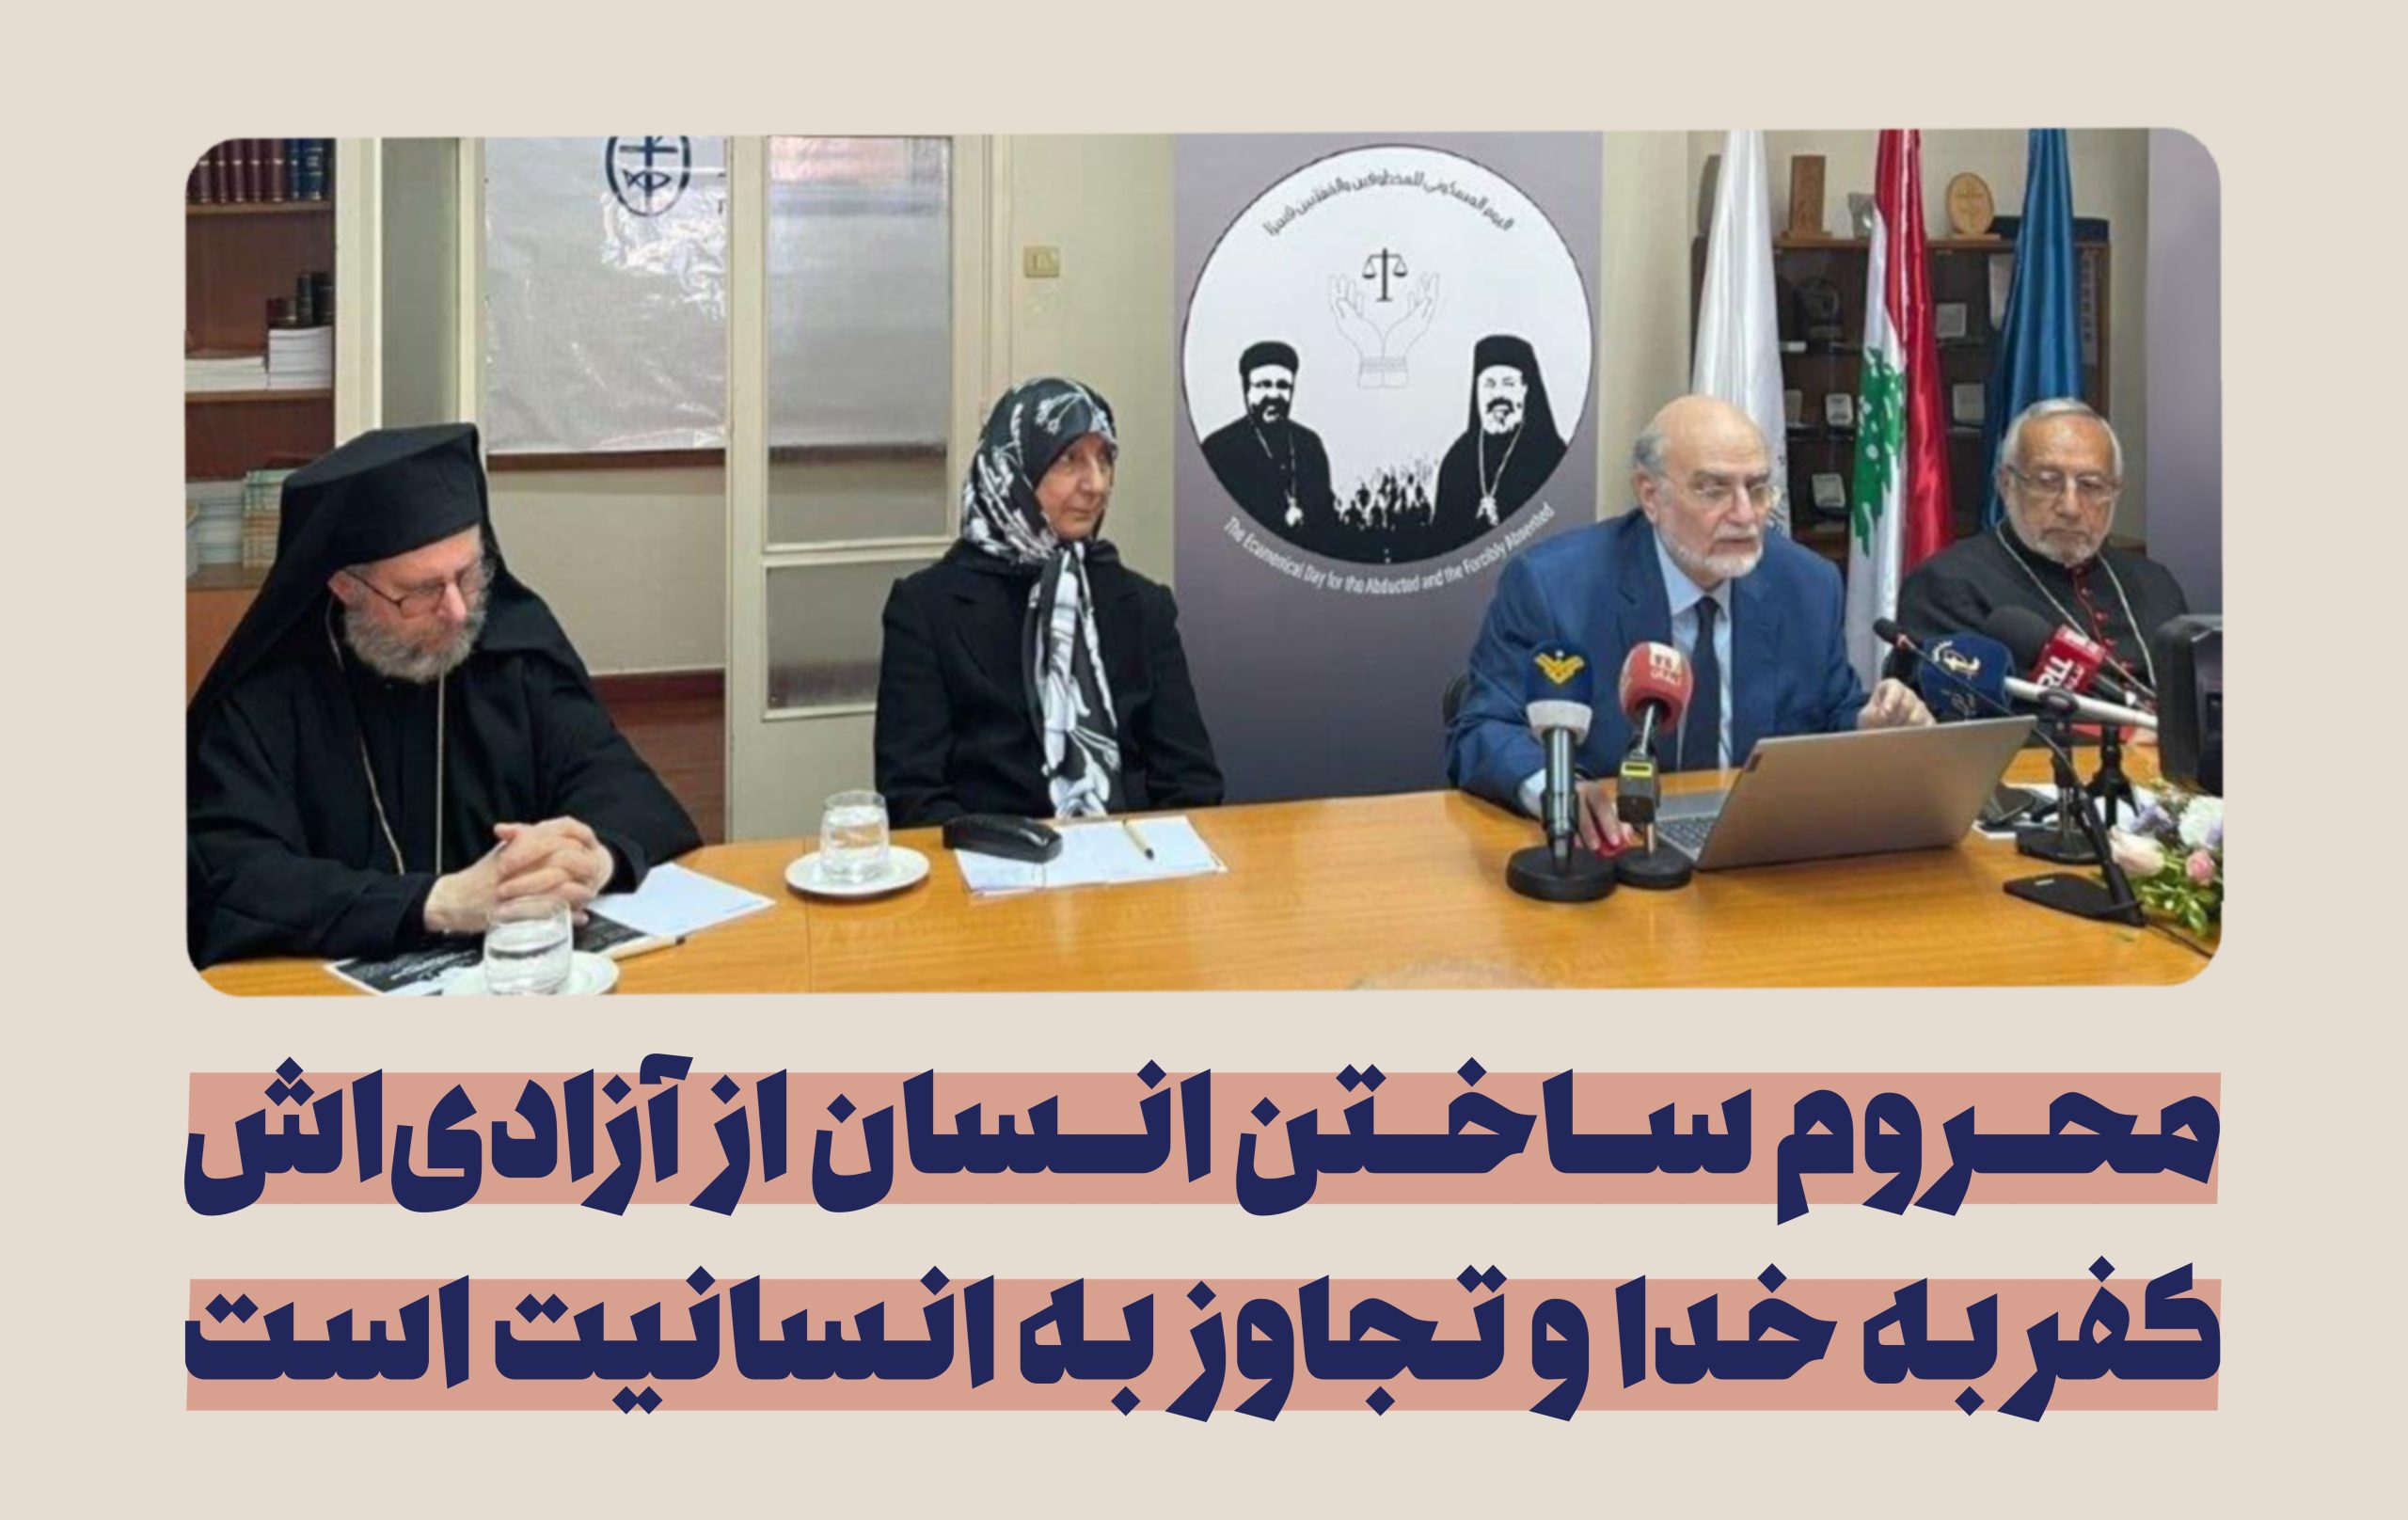 سخنرانی سیده رباب صدر در شورای کلیساهای خاورمیانه